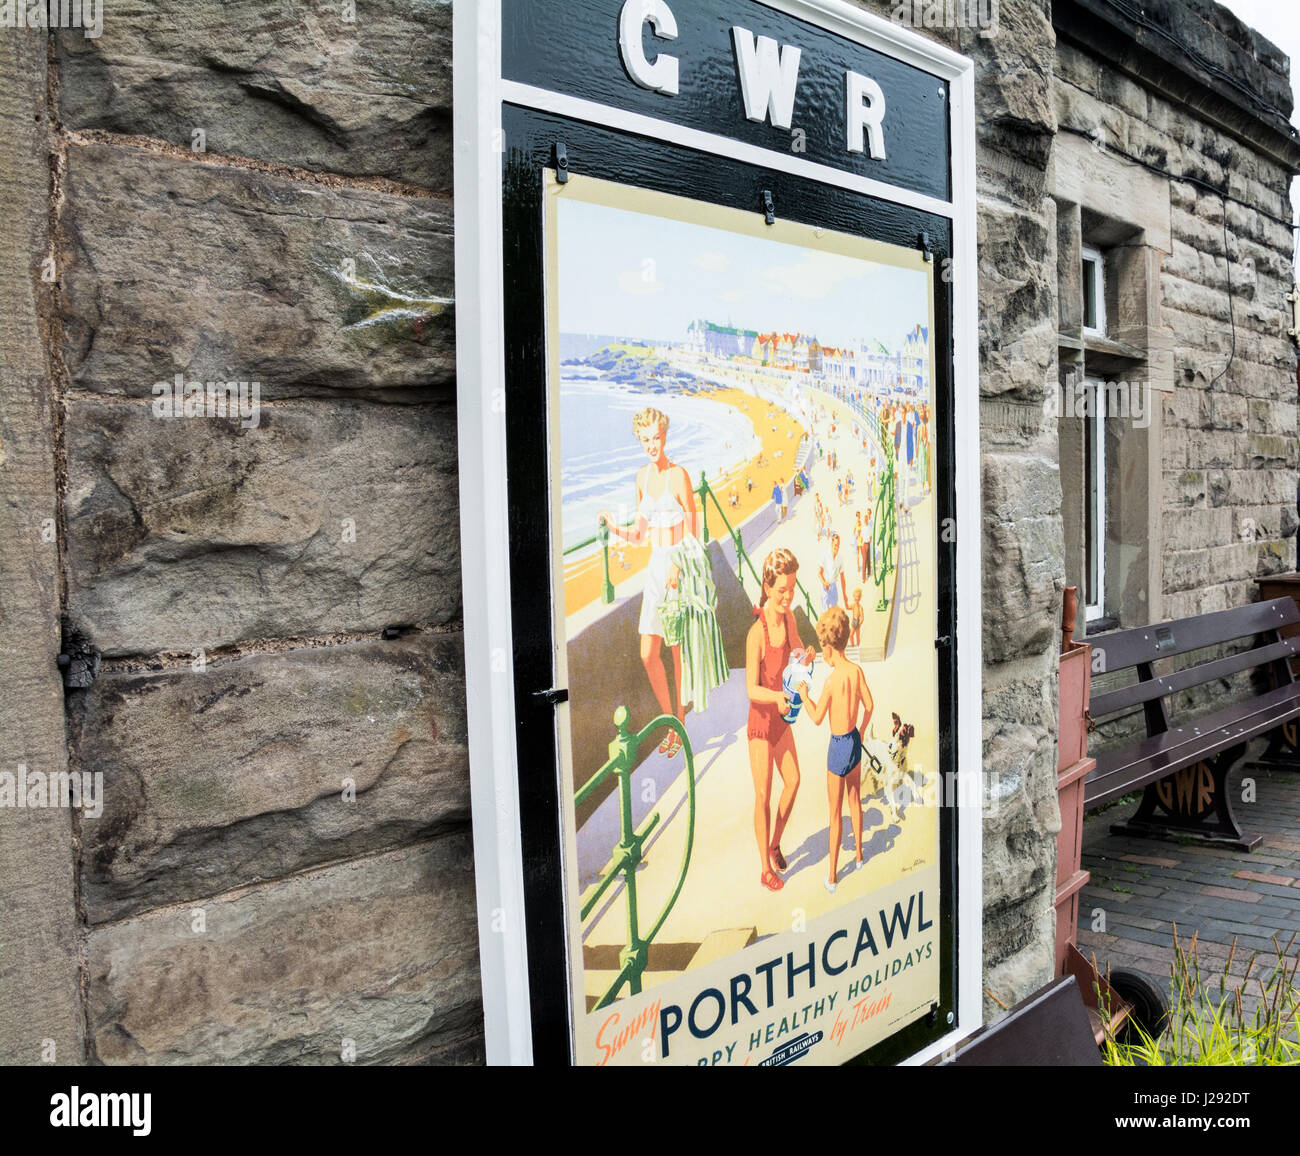 Vintage Reise-Plakat. Werbung Urlaub in Porthcawl. Größere Westbahn. Bahnhof Bridgnorth, Shropshire. Stockfoto